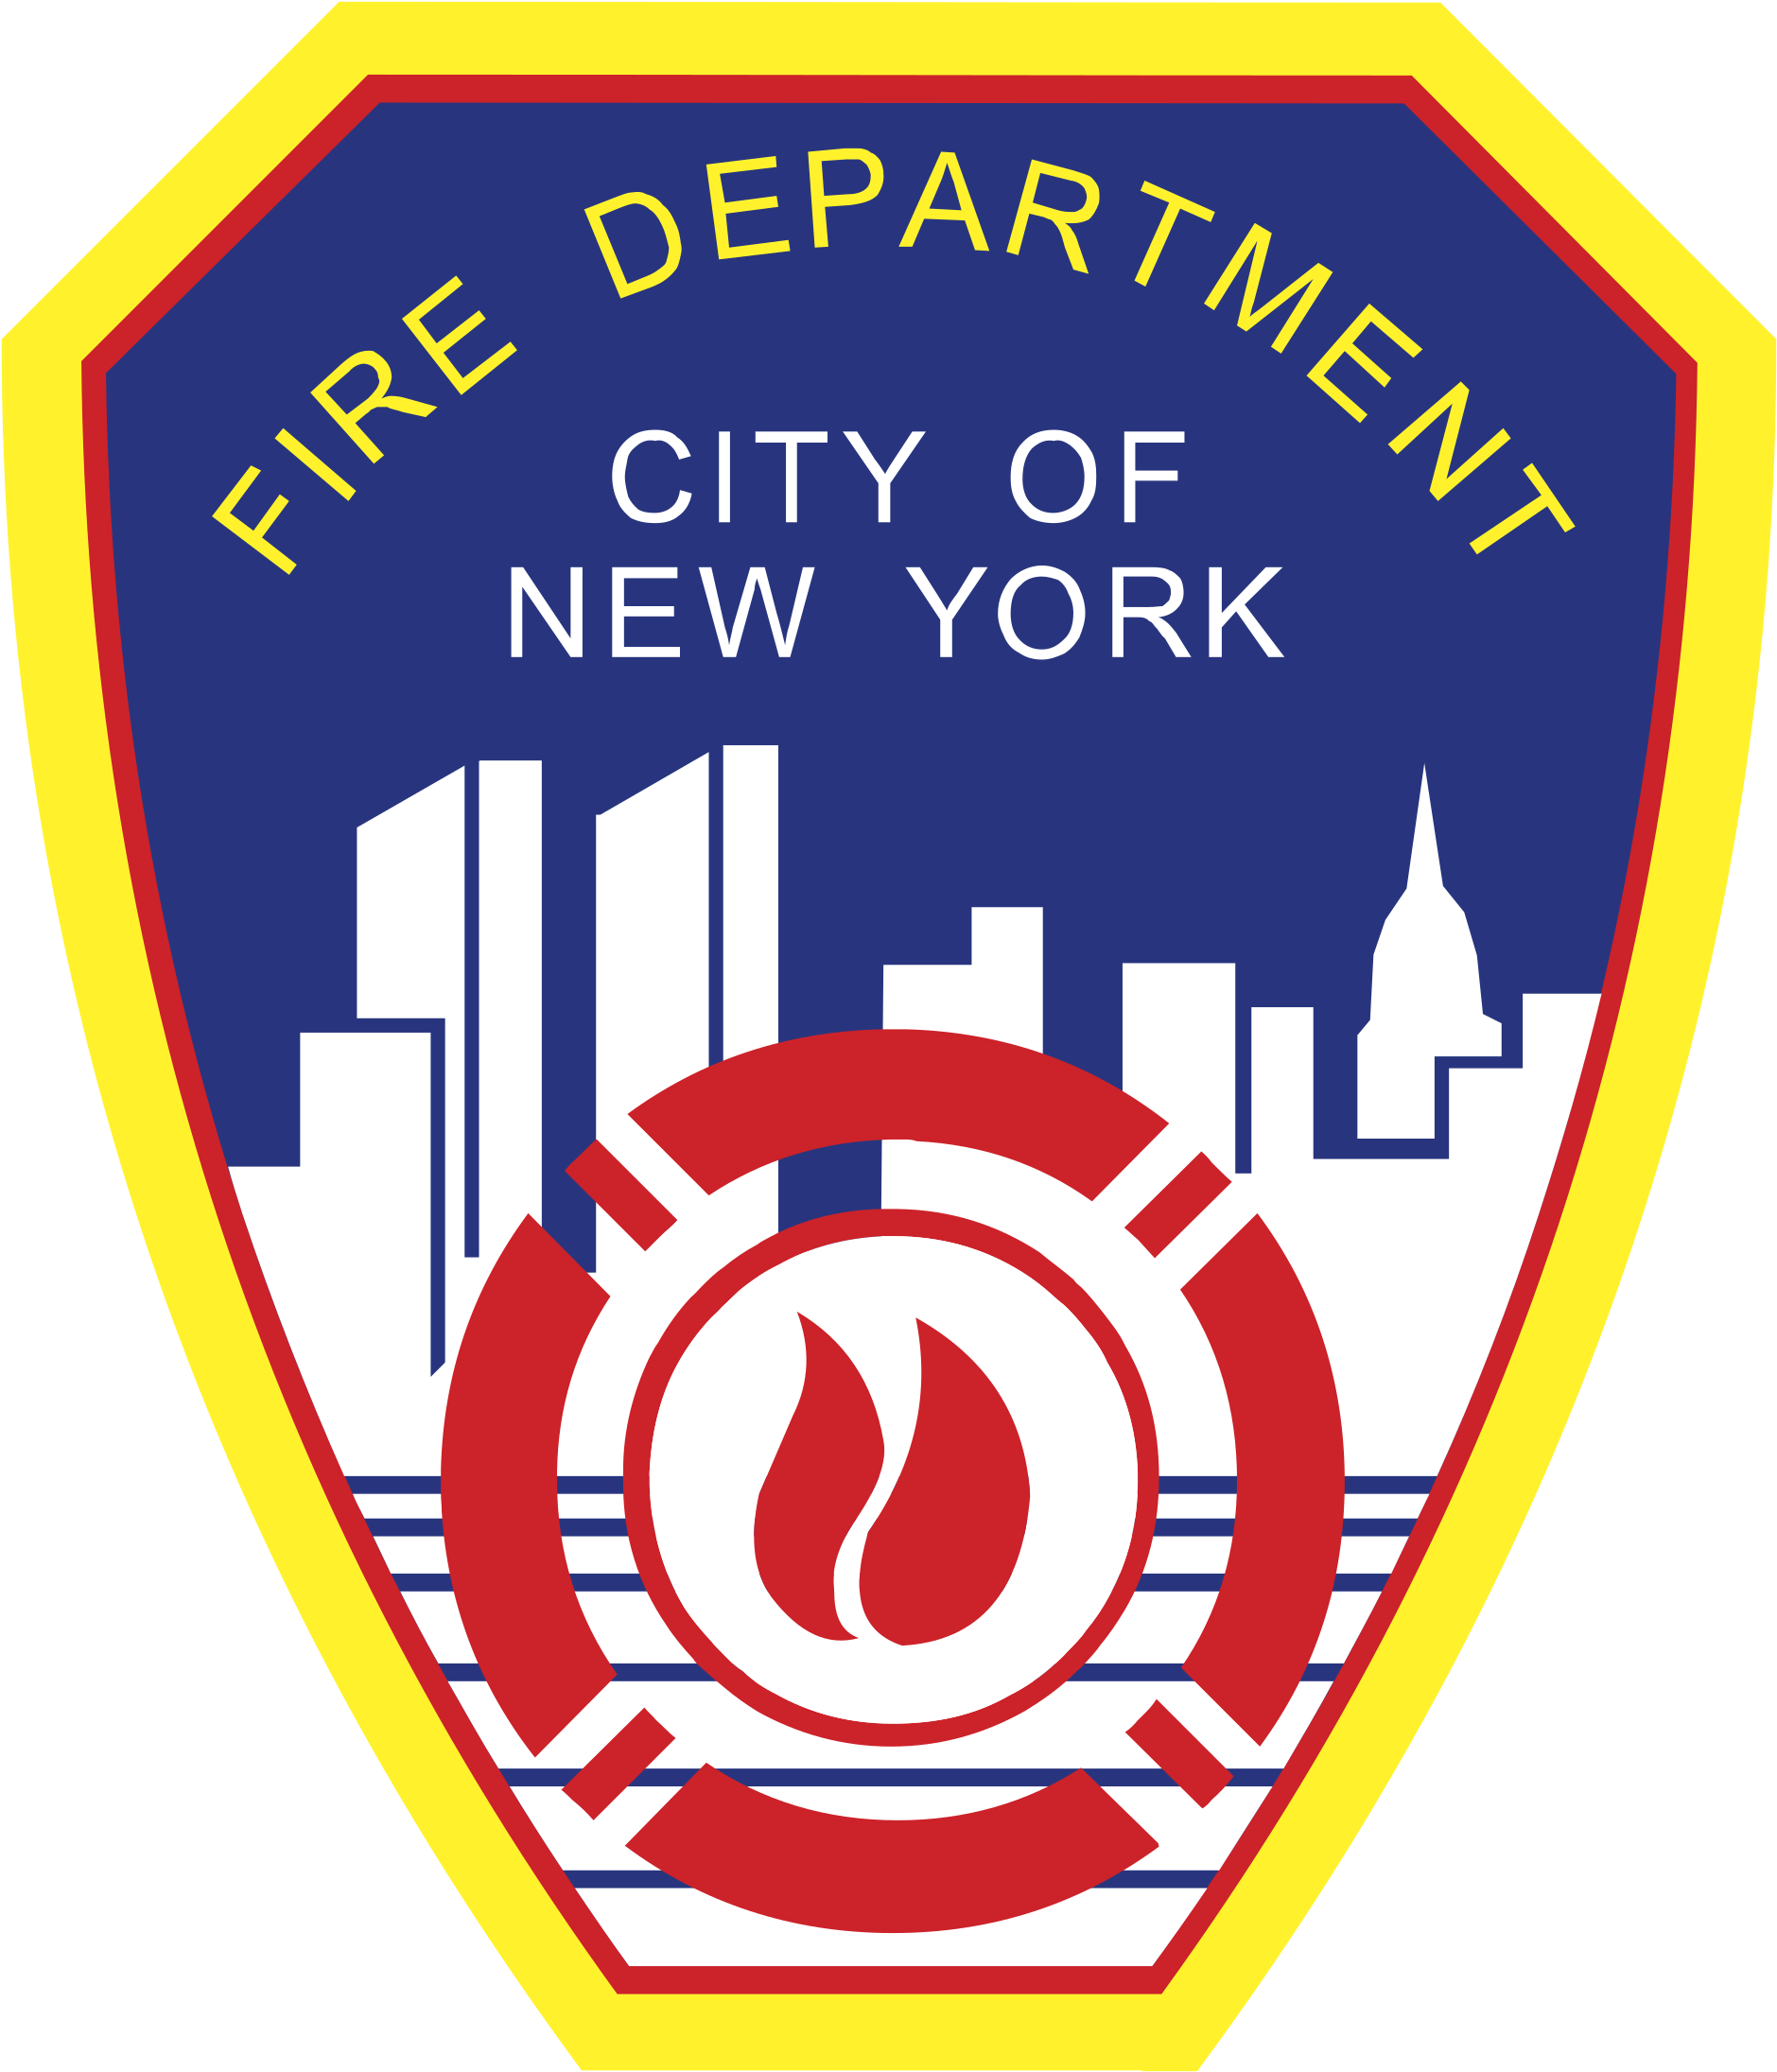 Immagine Trasparente del distintivo del vigile del fuoco